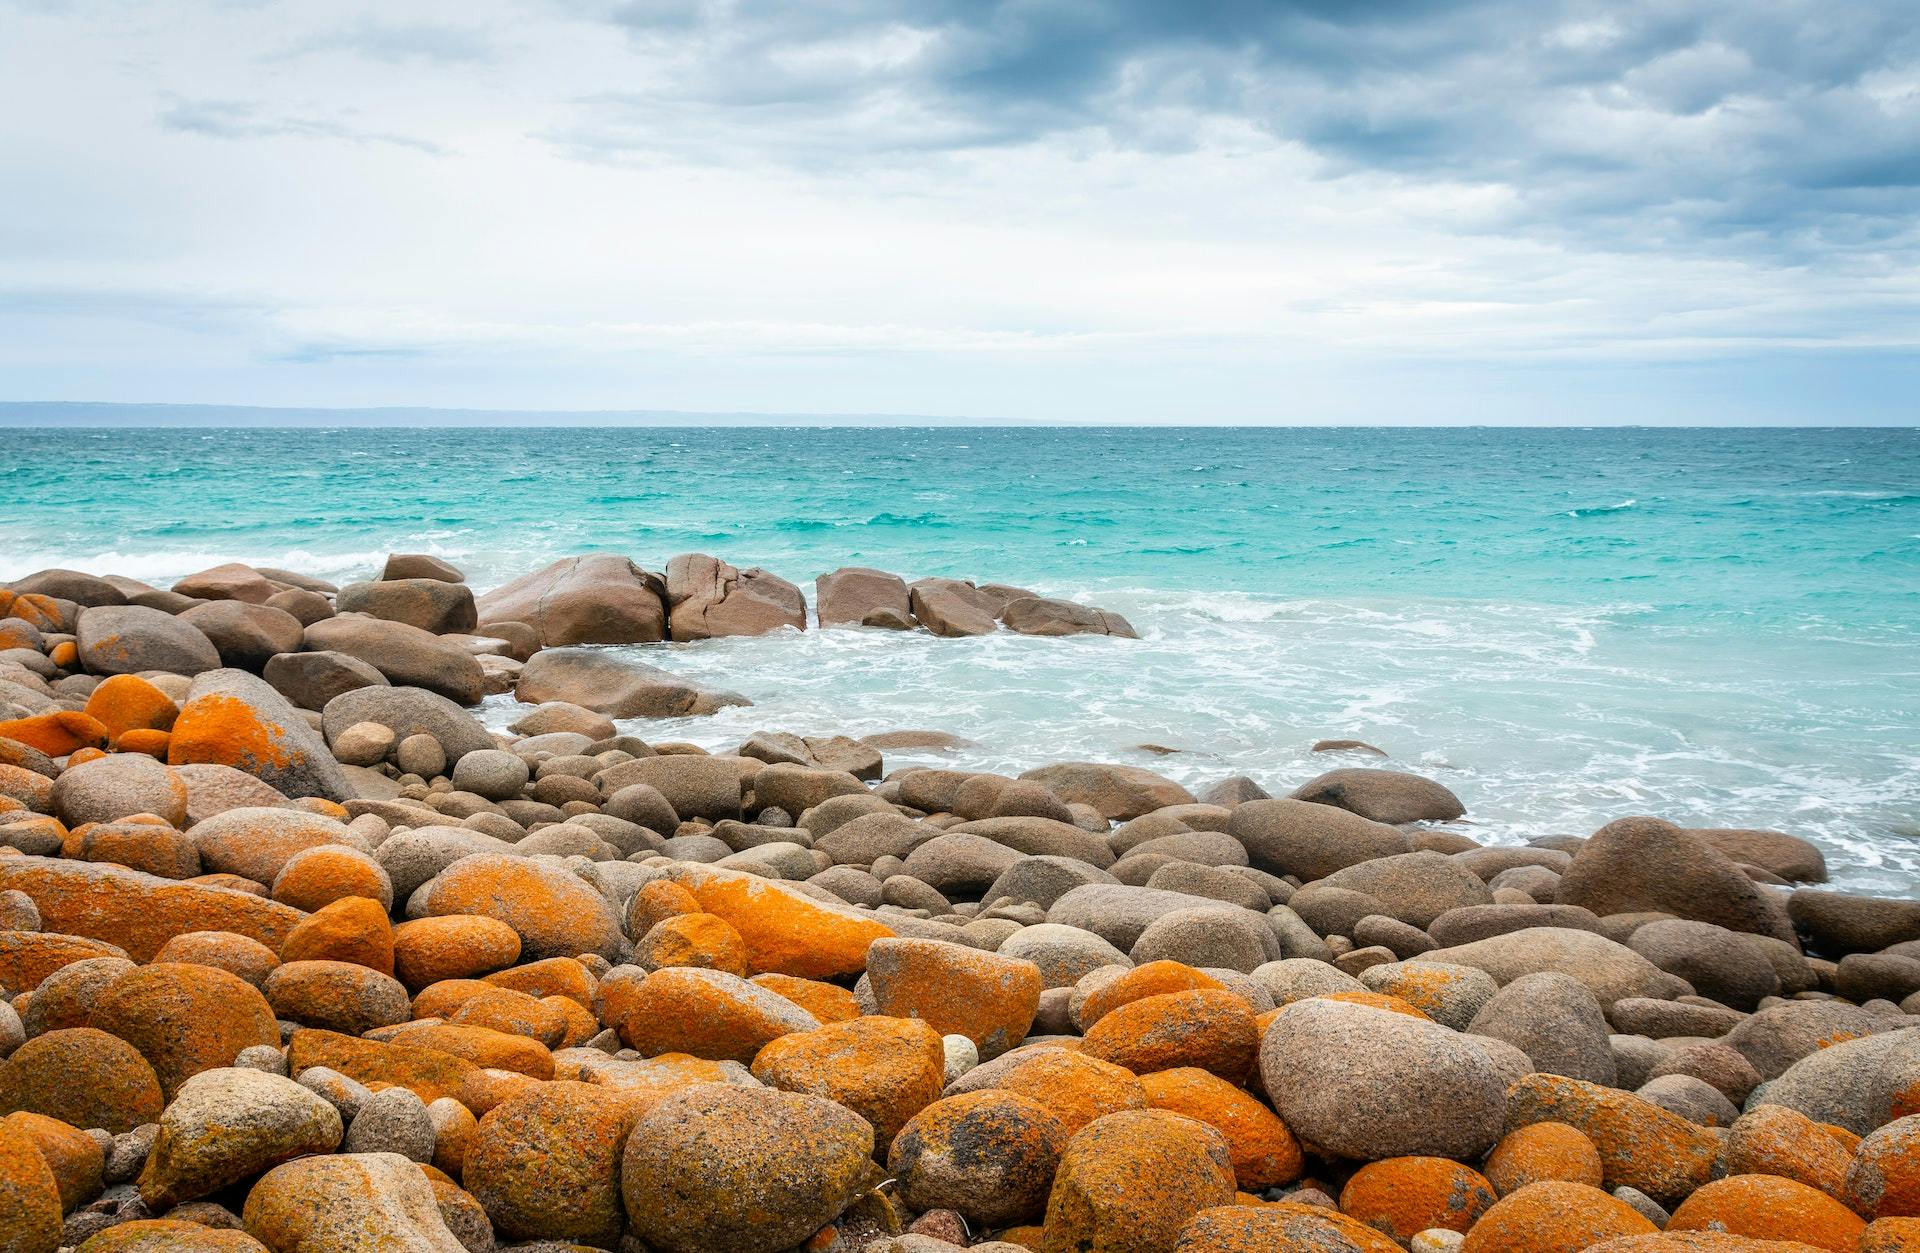 Ocean and rocks